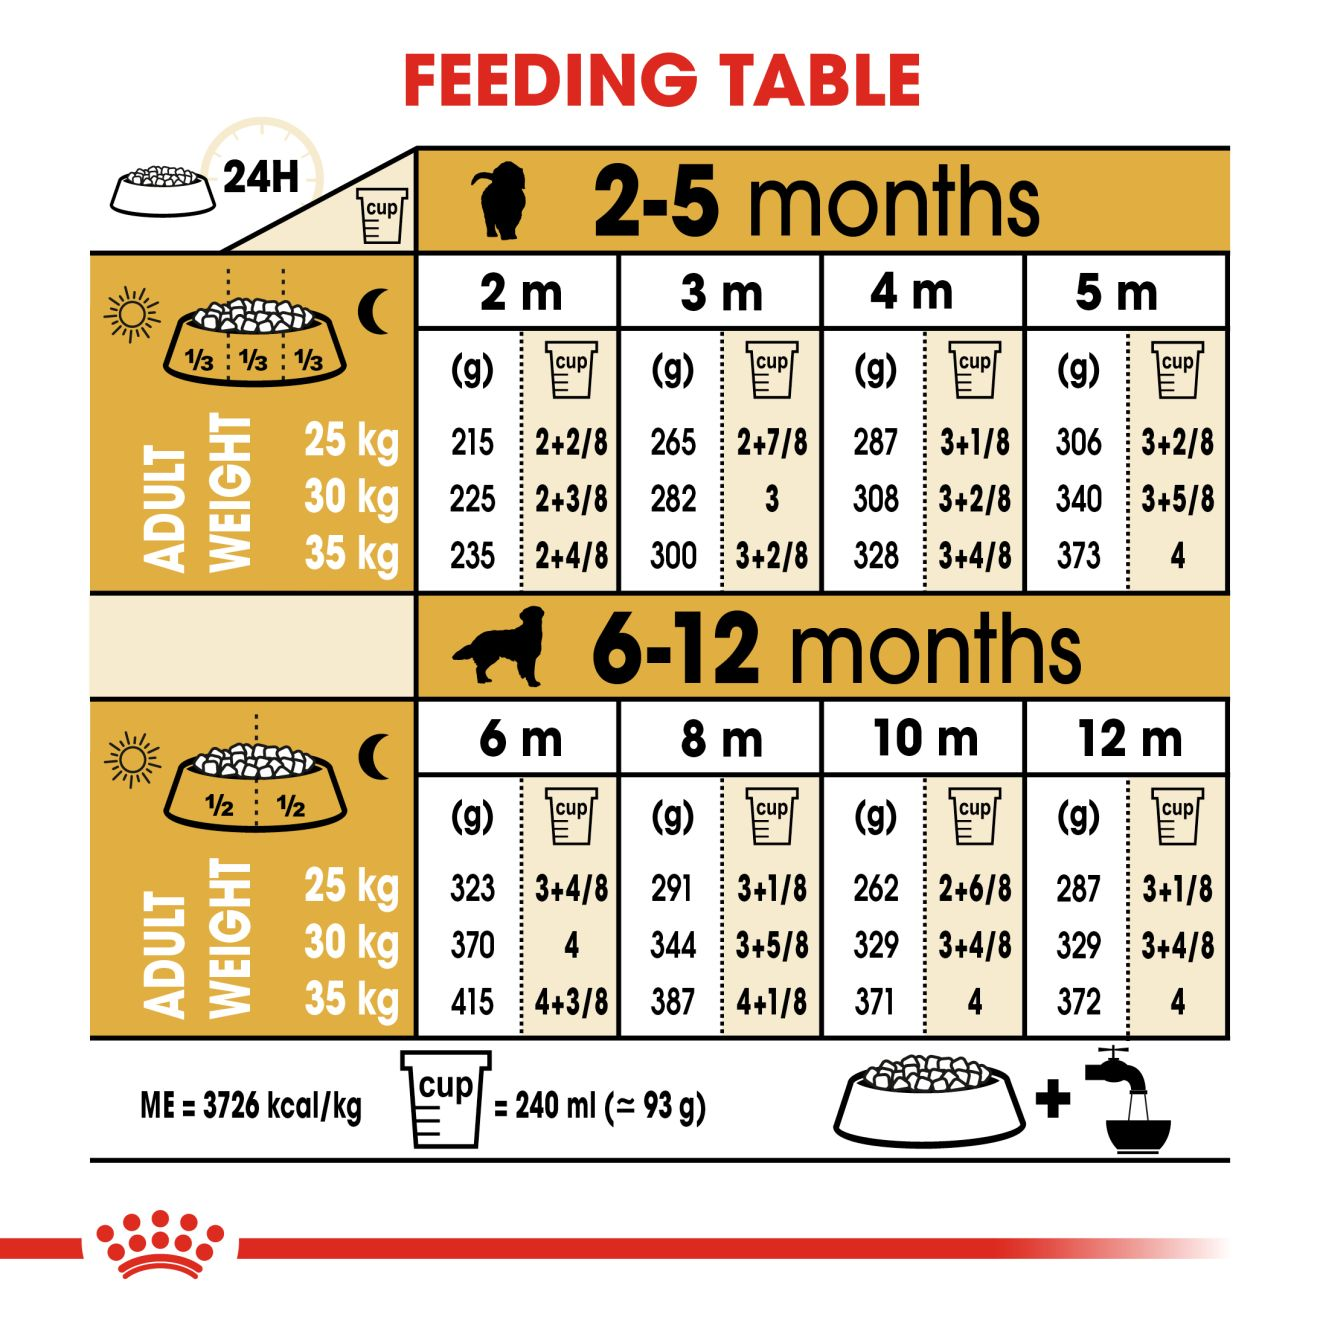 how often do you feed a golden retriever puppy? 2